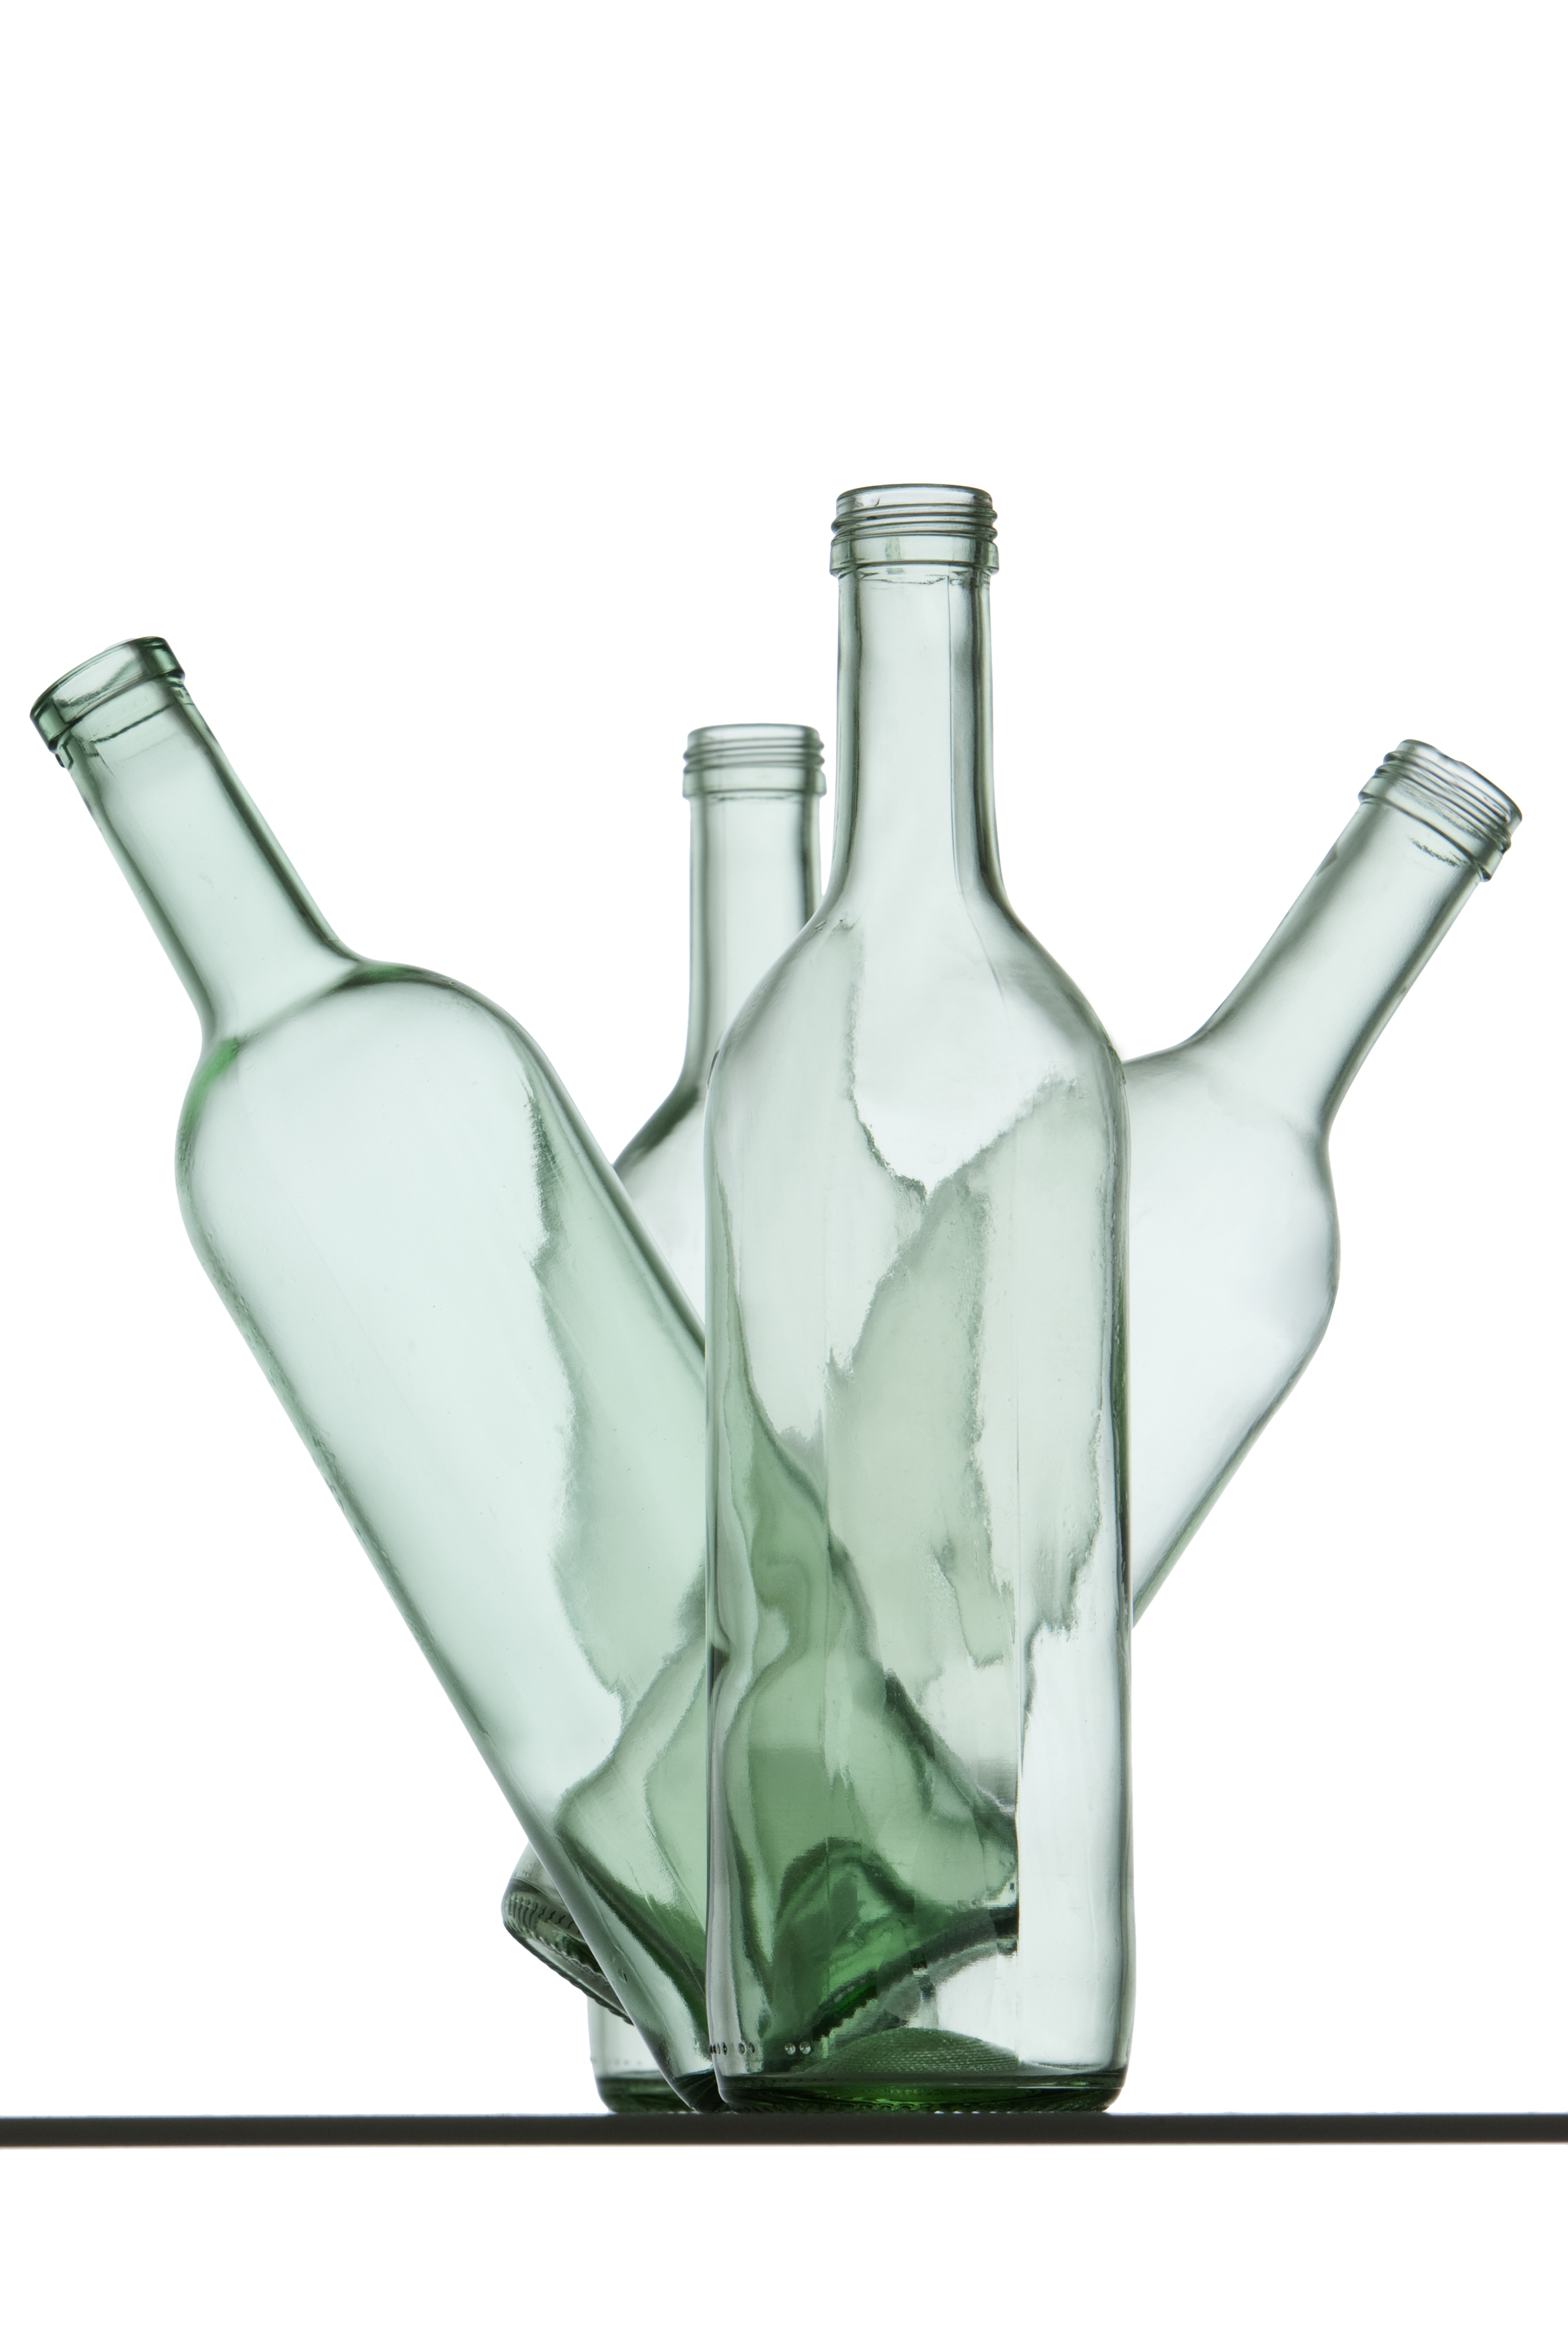 Vier hellgrüne Glasflaschen stehen so zueinander, dass es aussieht, als ob sie tanzen.